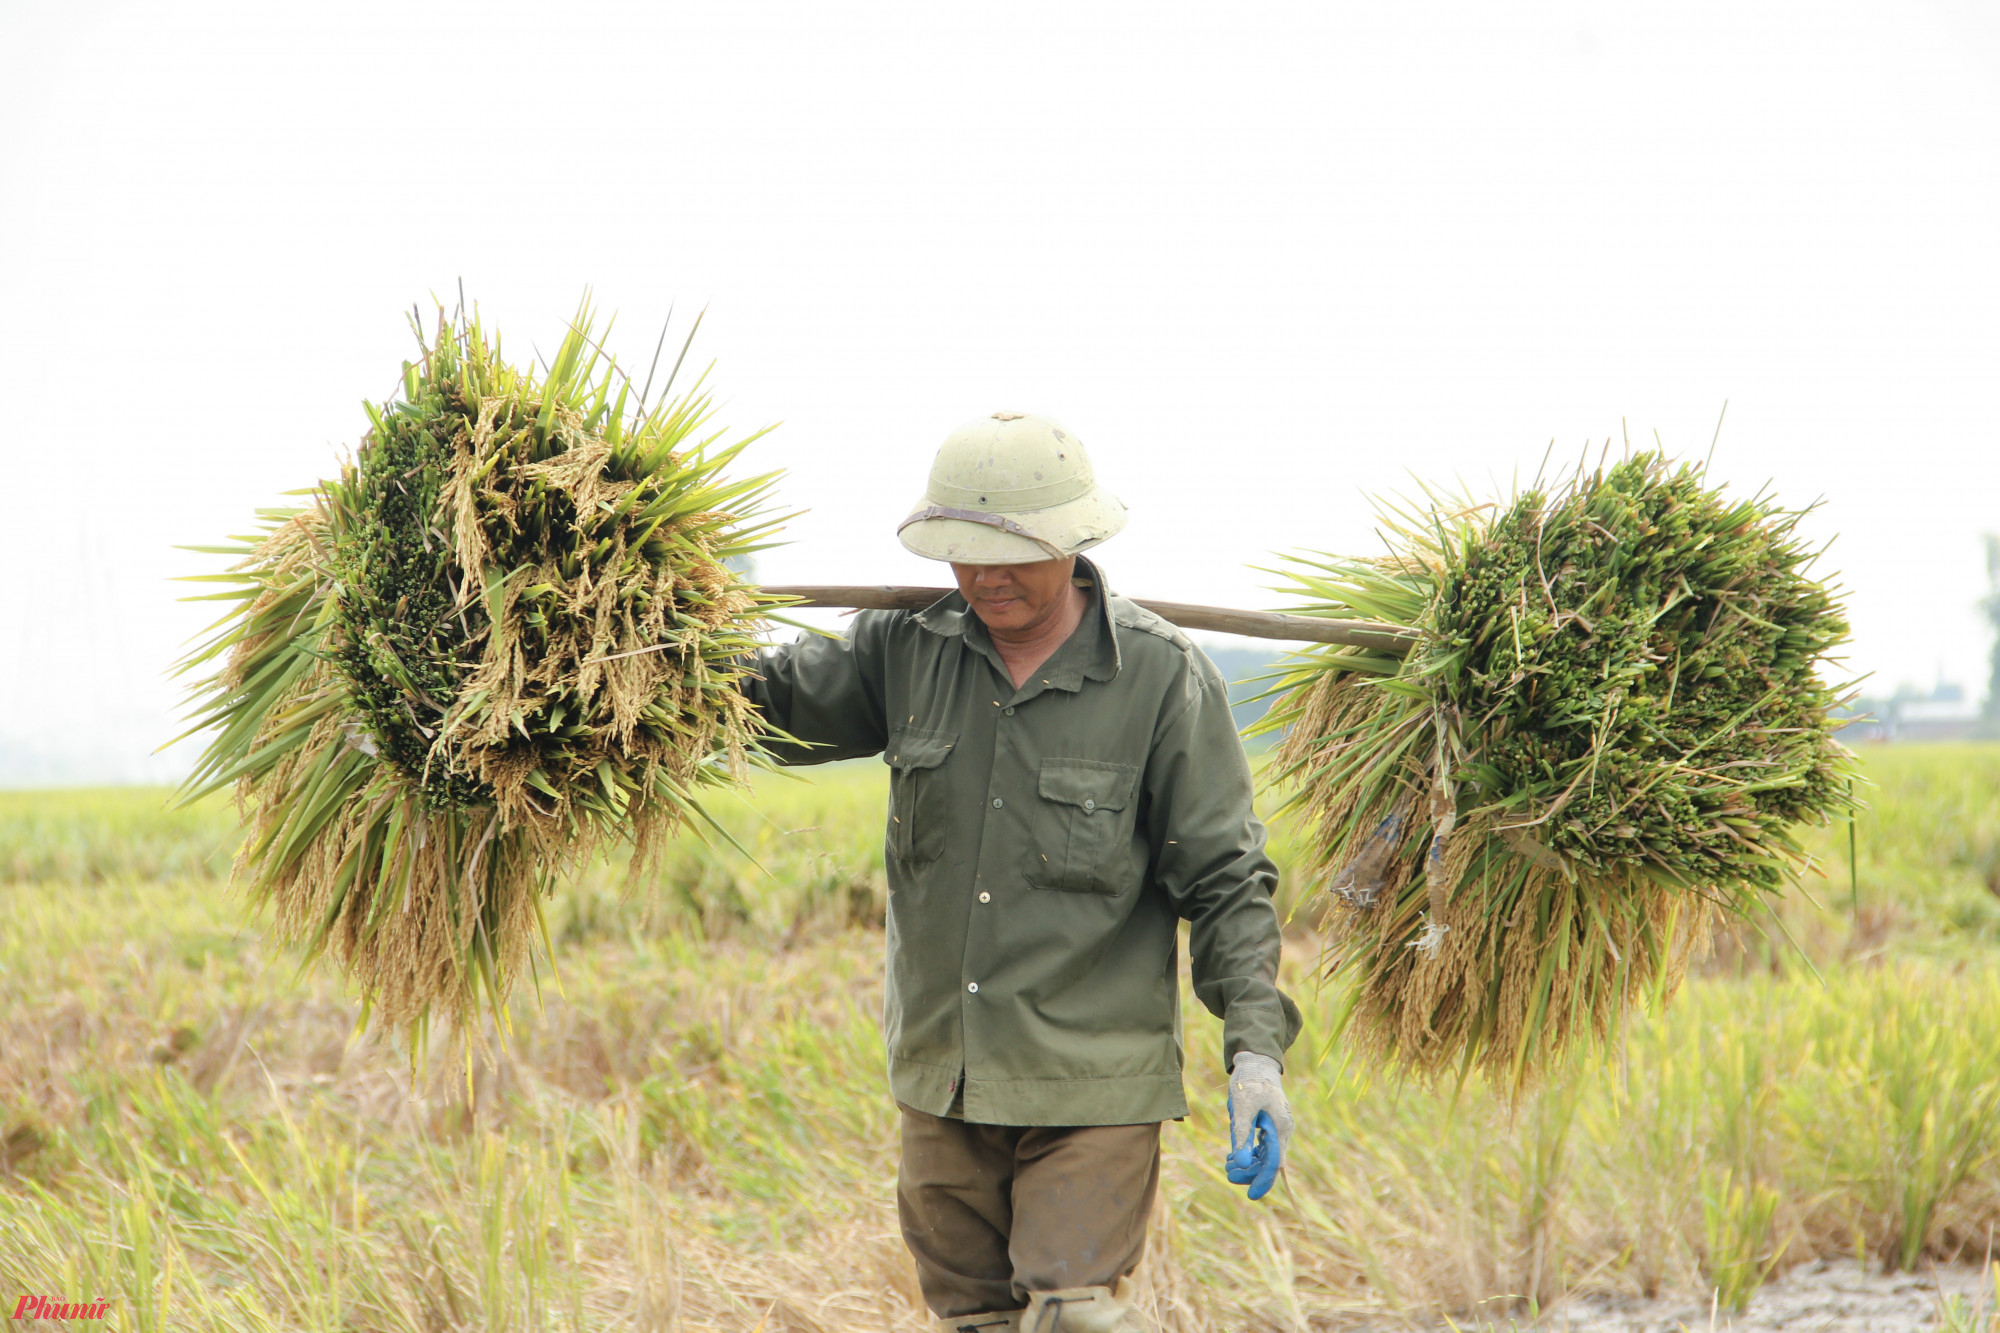 Trong khi những người phụ nữ dùng liềm gặt lúa, bó lúa… những người đàn ông lại được giao nhiệm vụ vận chuyển lúa lên xe kéo đưa về nhà.